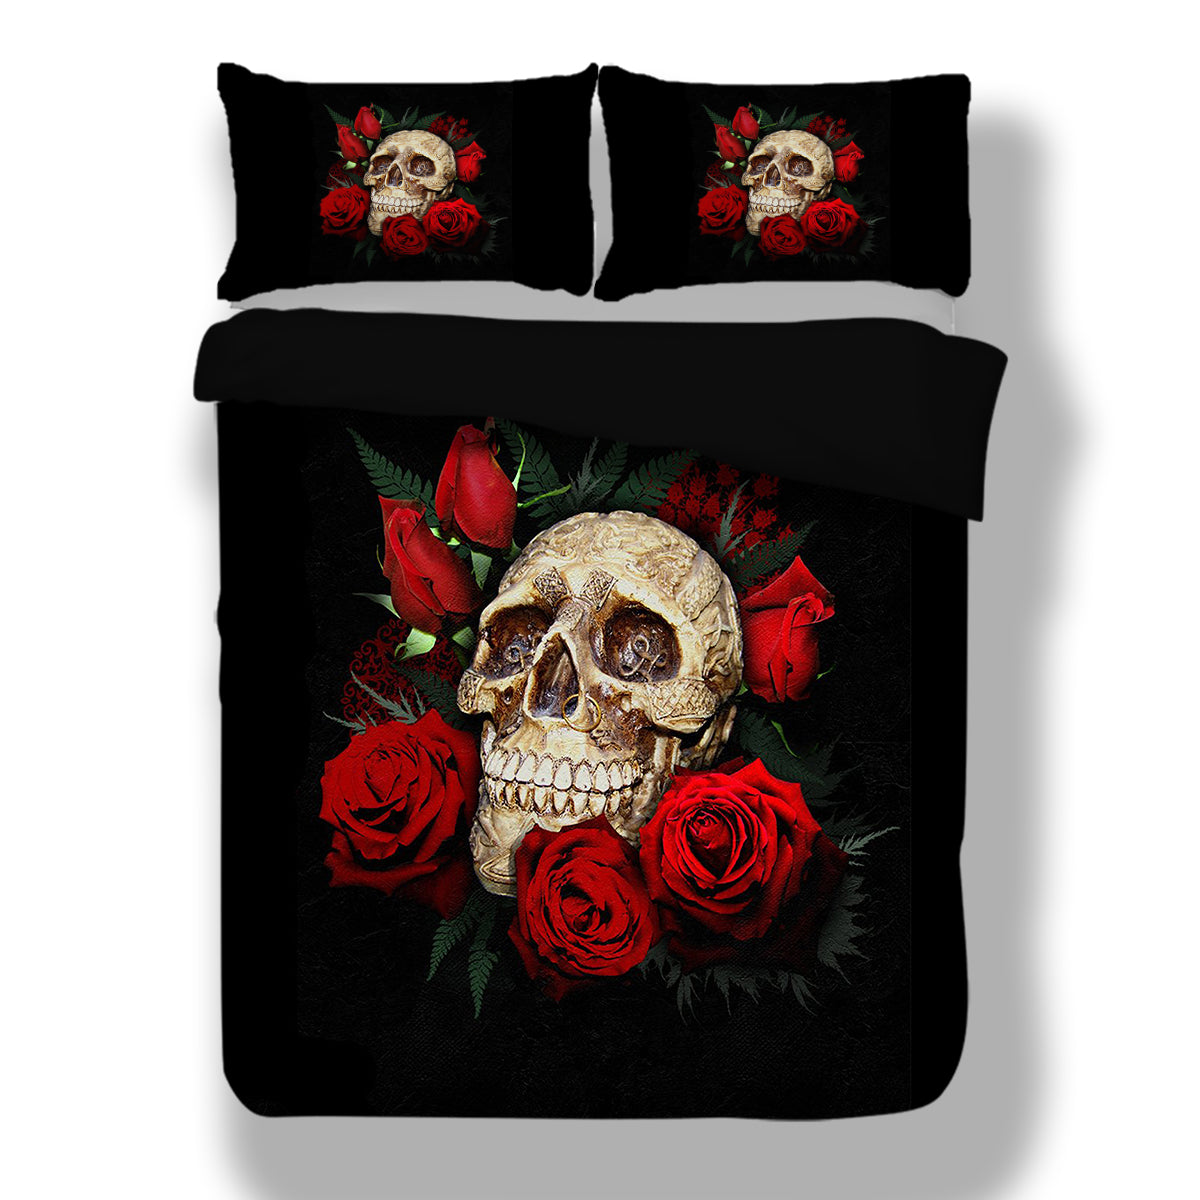 WONGS BEDDING Skull and roses Duvet cover set Bedding Bedroom set